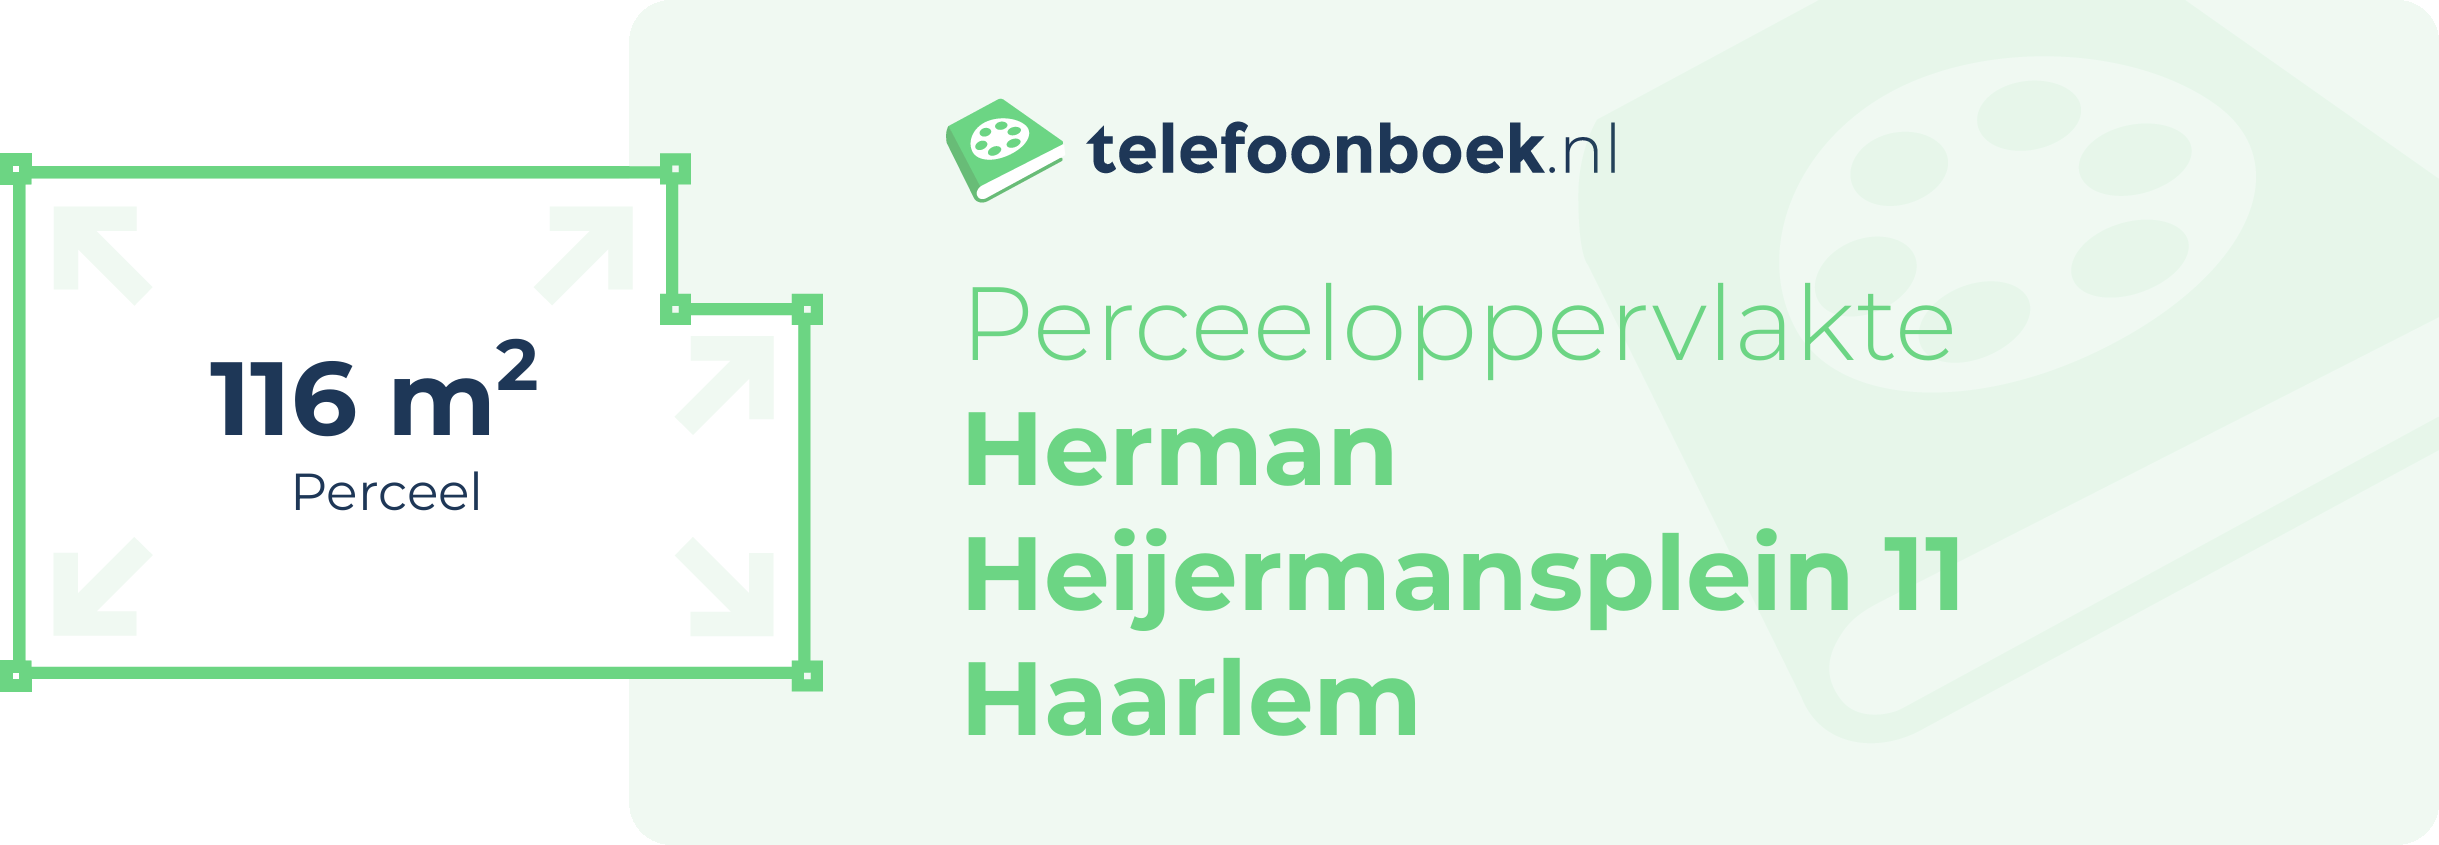 Perceeloppervlakte Herman Heijermansplein 11 Haarlem